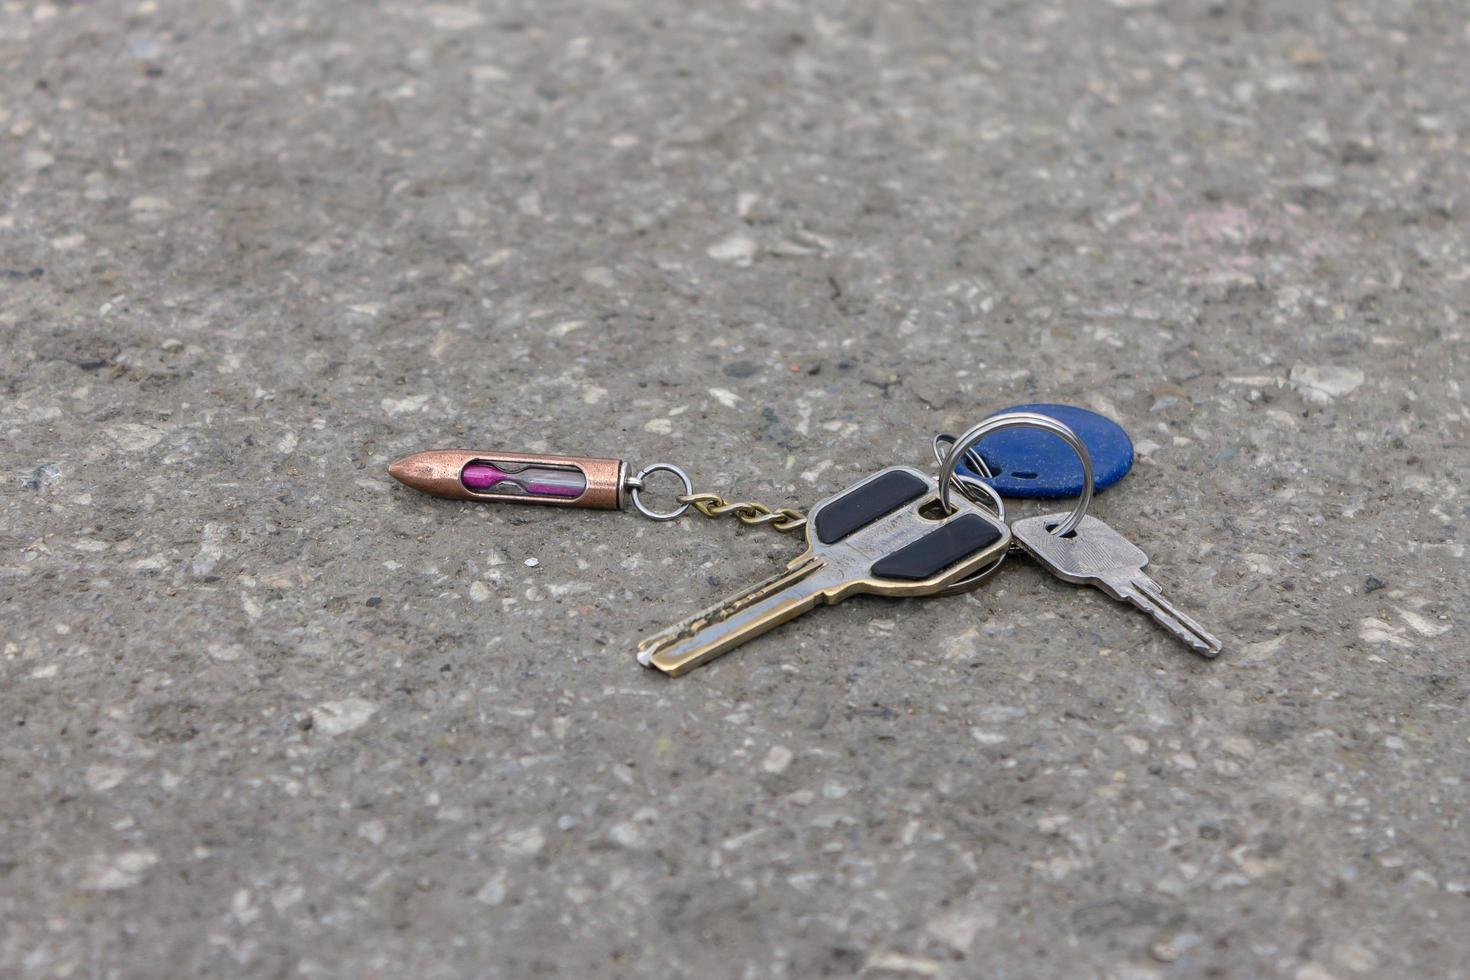 perdido monte de chaves antigas com um chaveiro na estrada em um parque da cidade foto